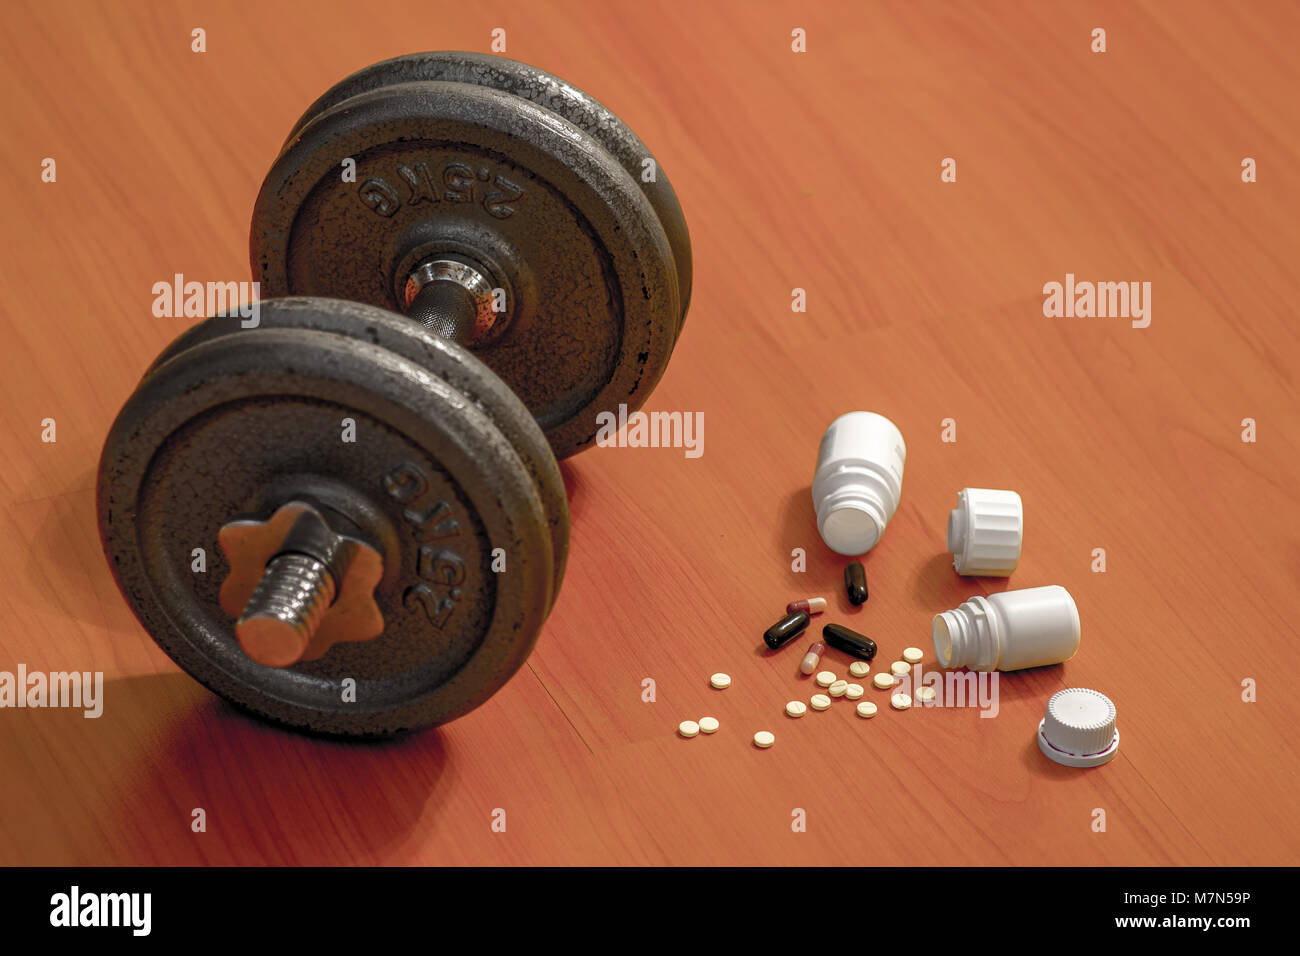 Steroide pillole e capsule con il manubrio peso in background - Il doping nello sport. Foto Stock